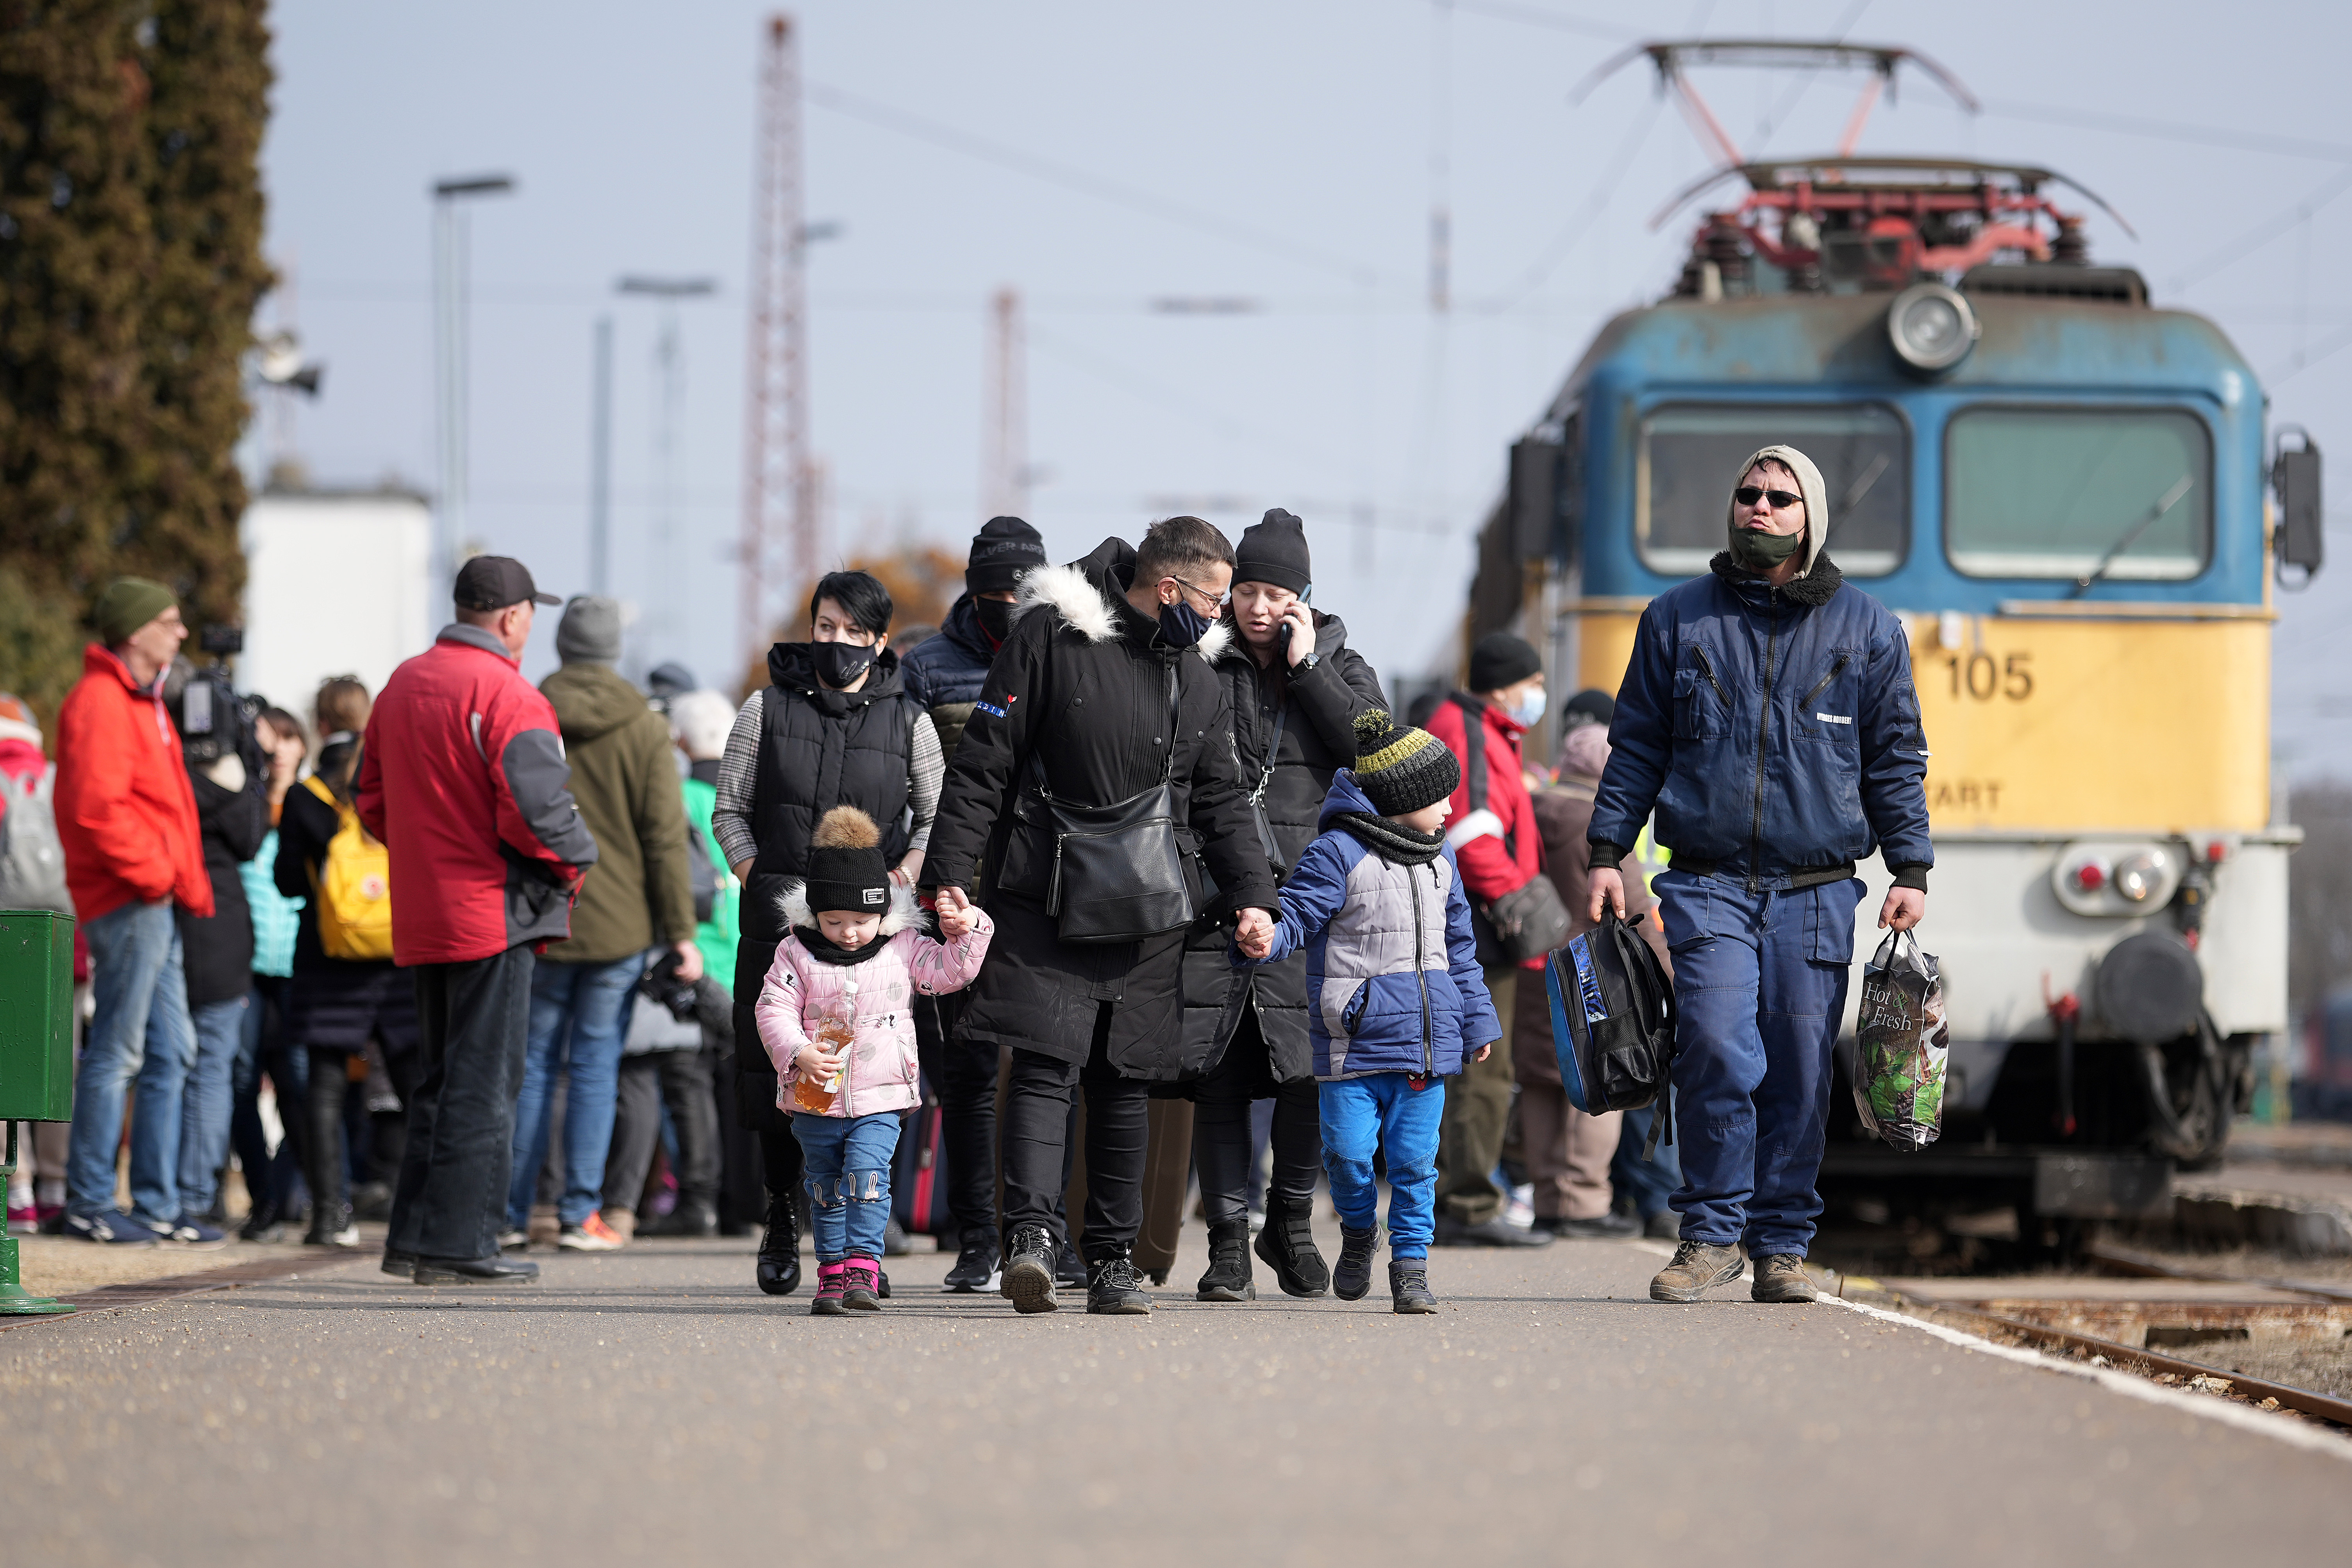 ¿Cómo son recibidos los refugiados ucranianos en Europa?